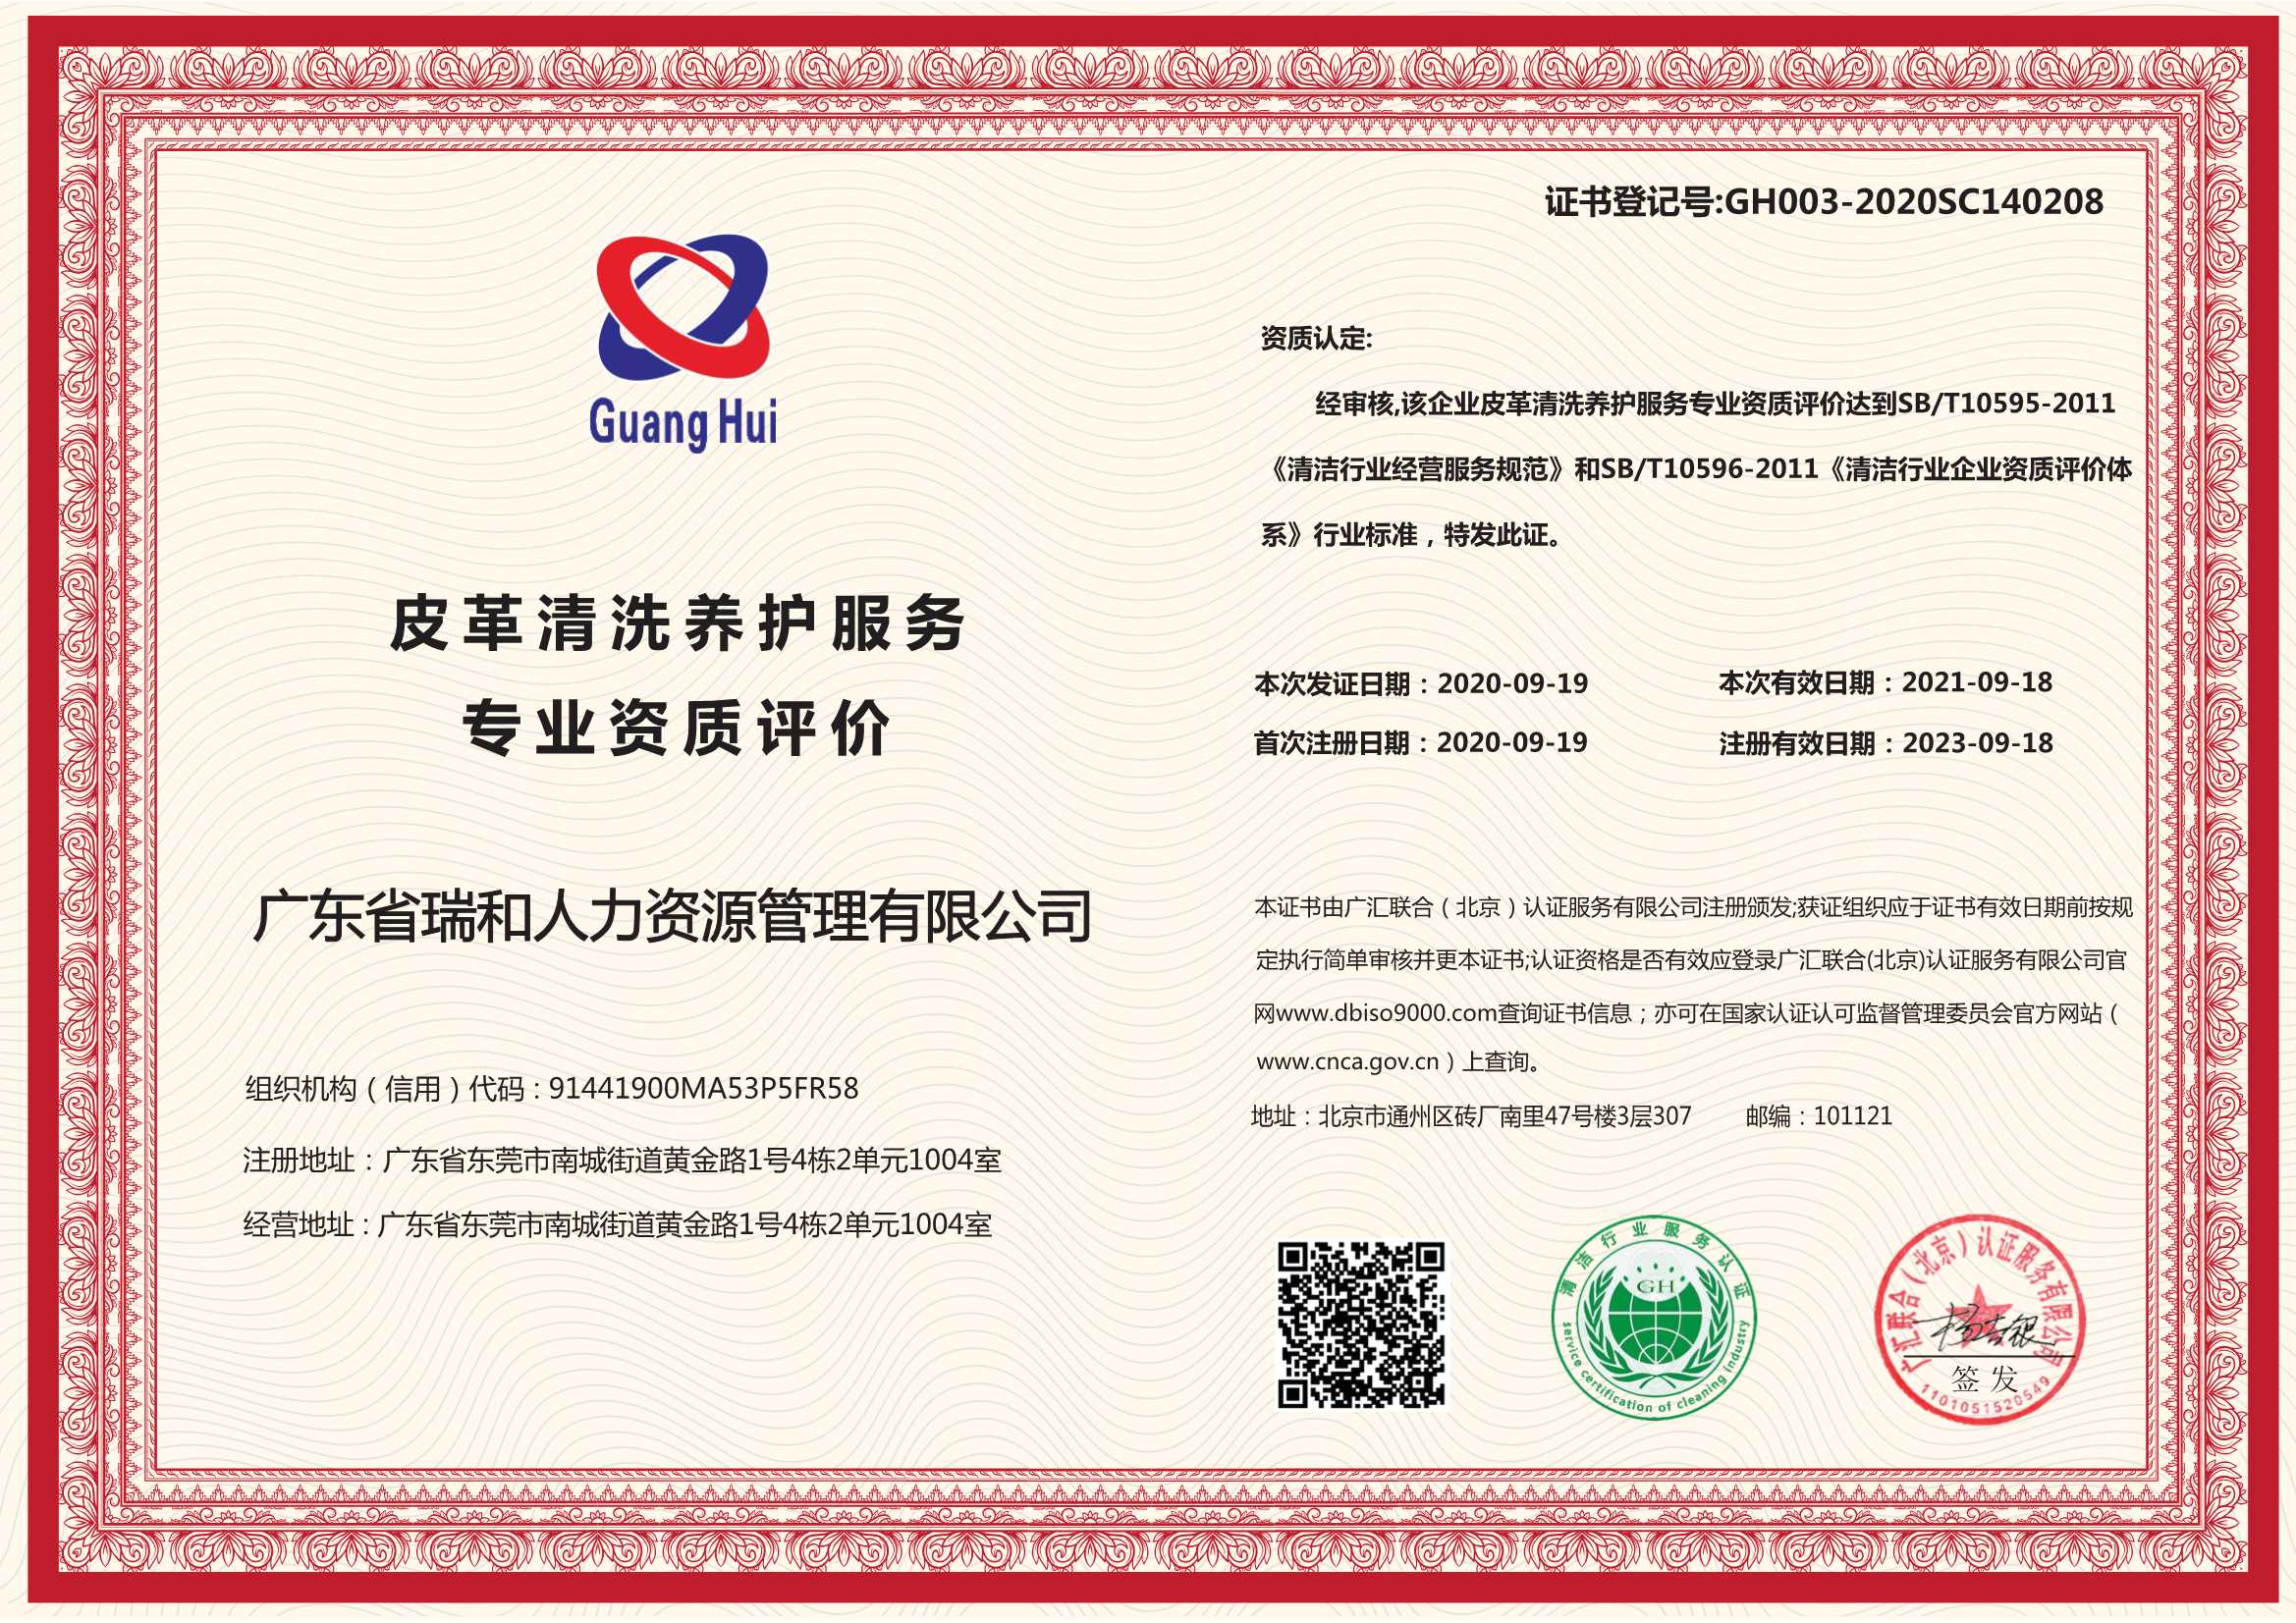 皮革清洗养护服务专业资质-杭州贝安企业管理有限公司